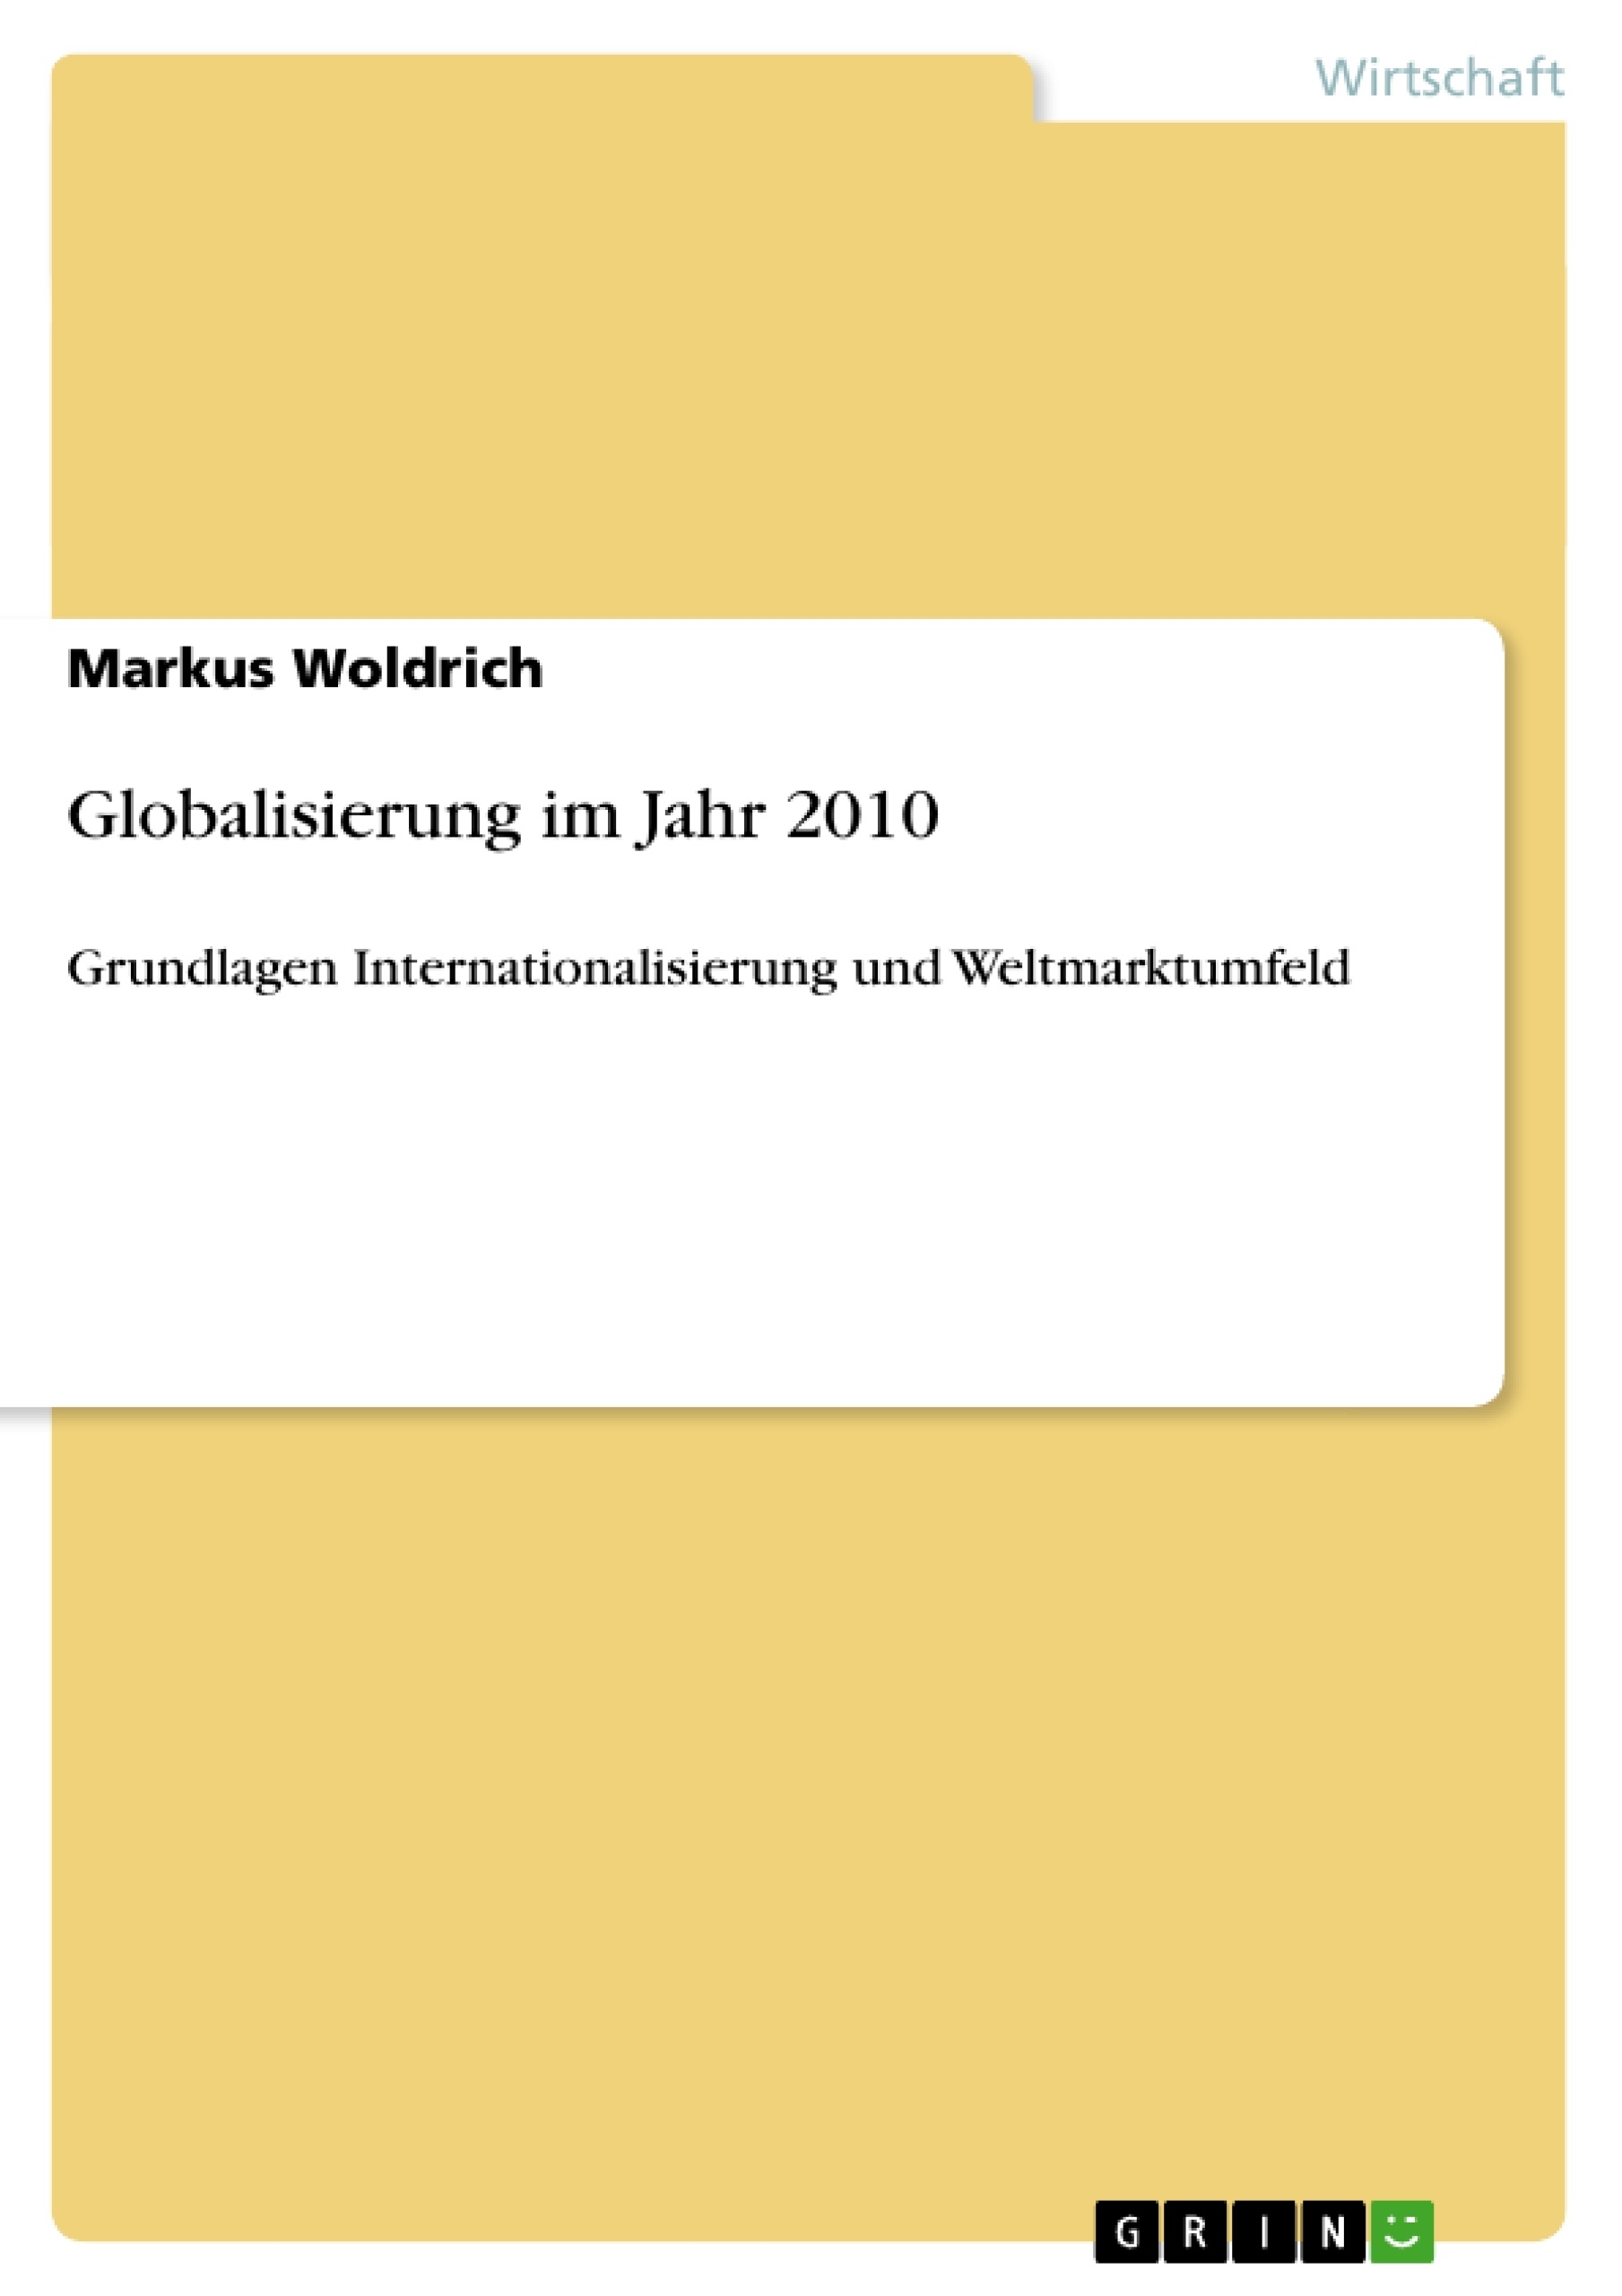 Title: Globalisierung im Jahr 2010